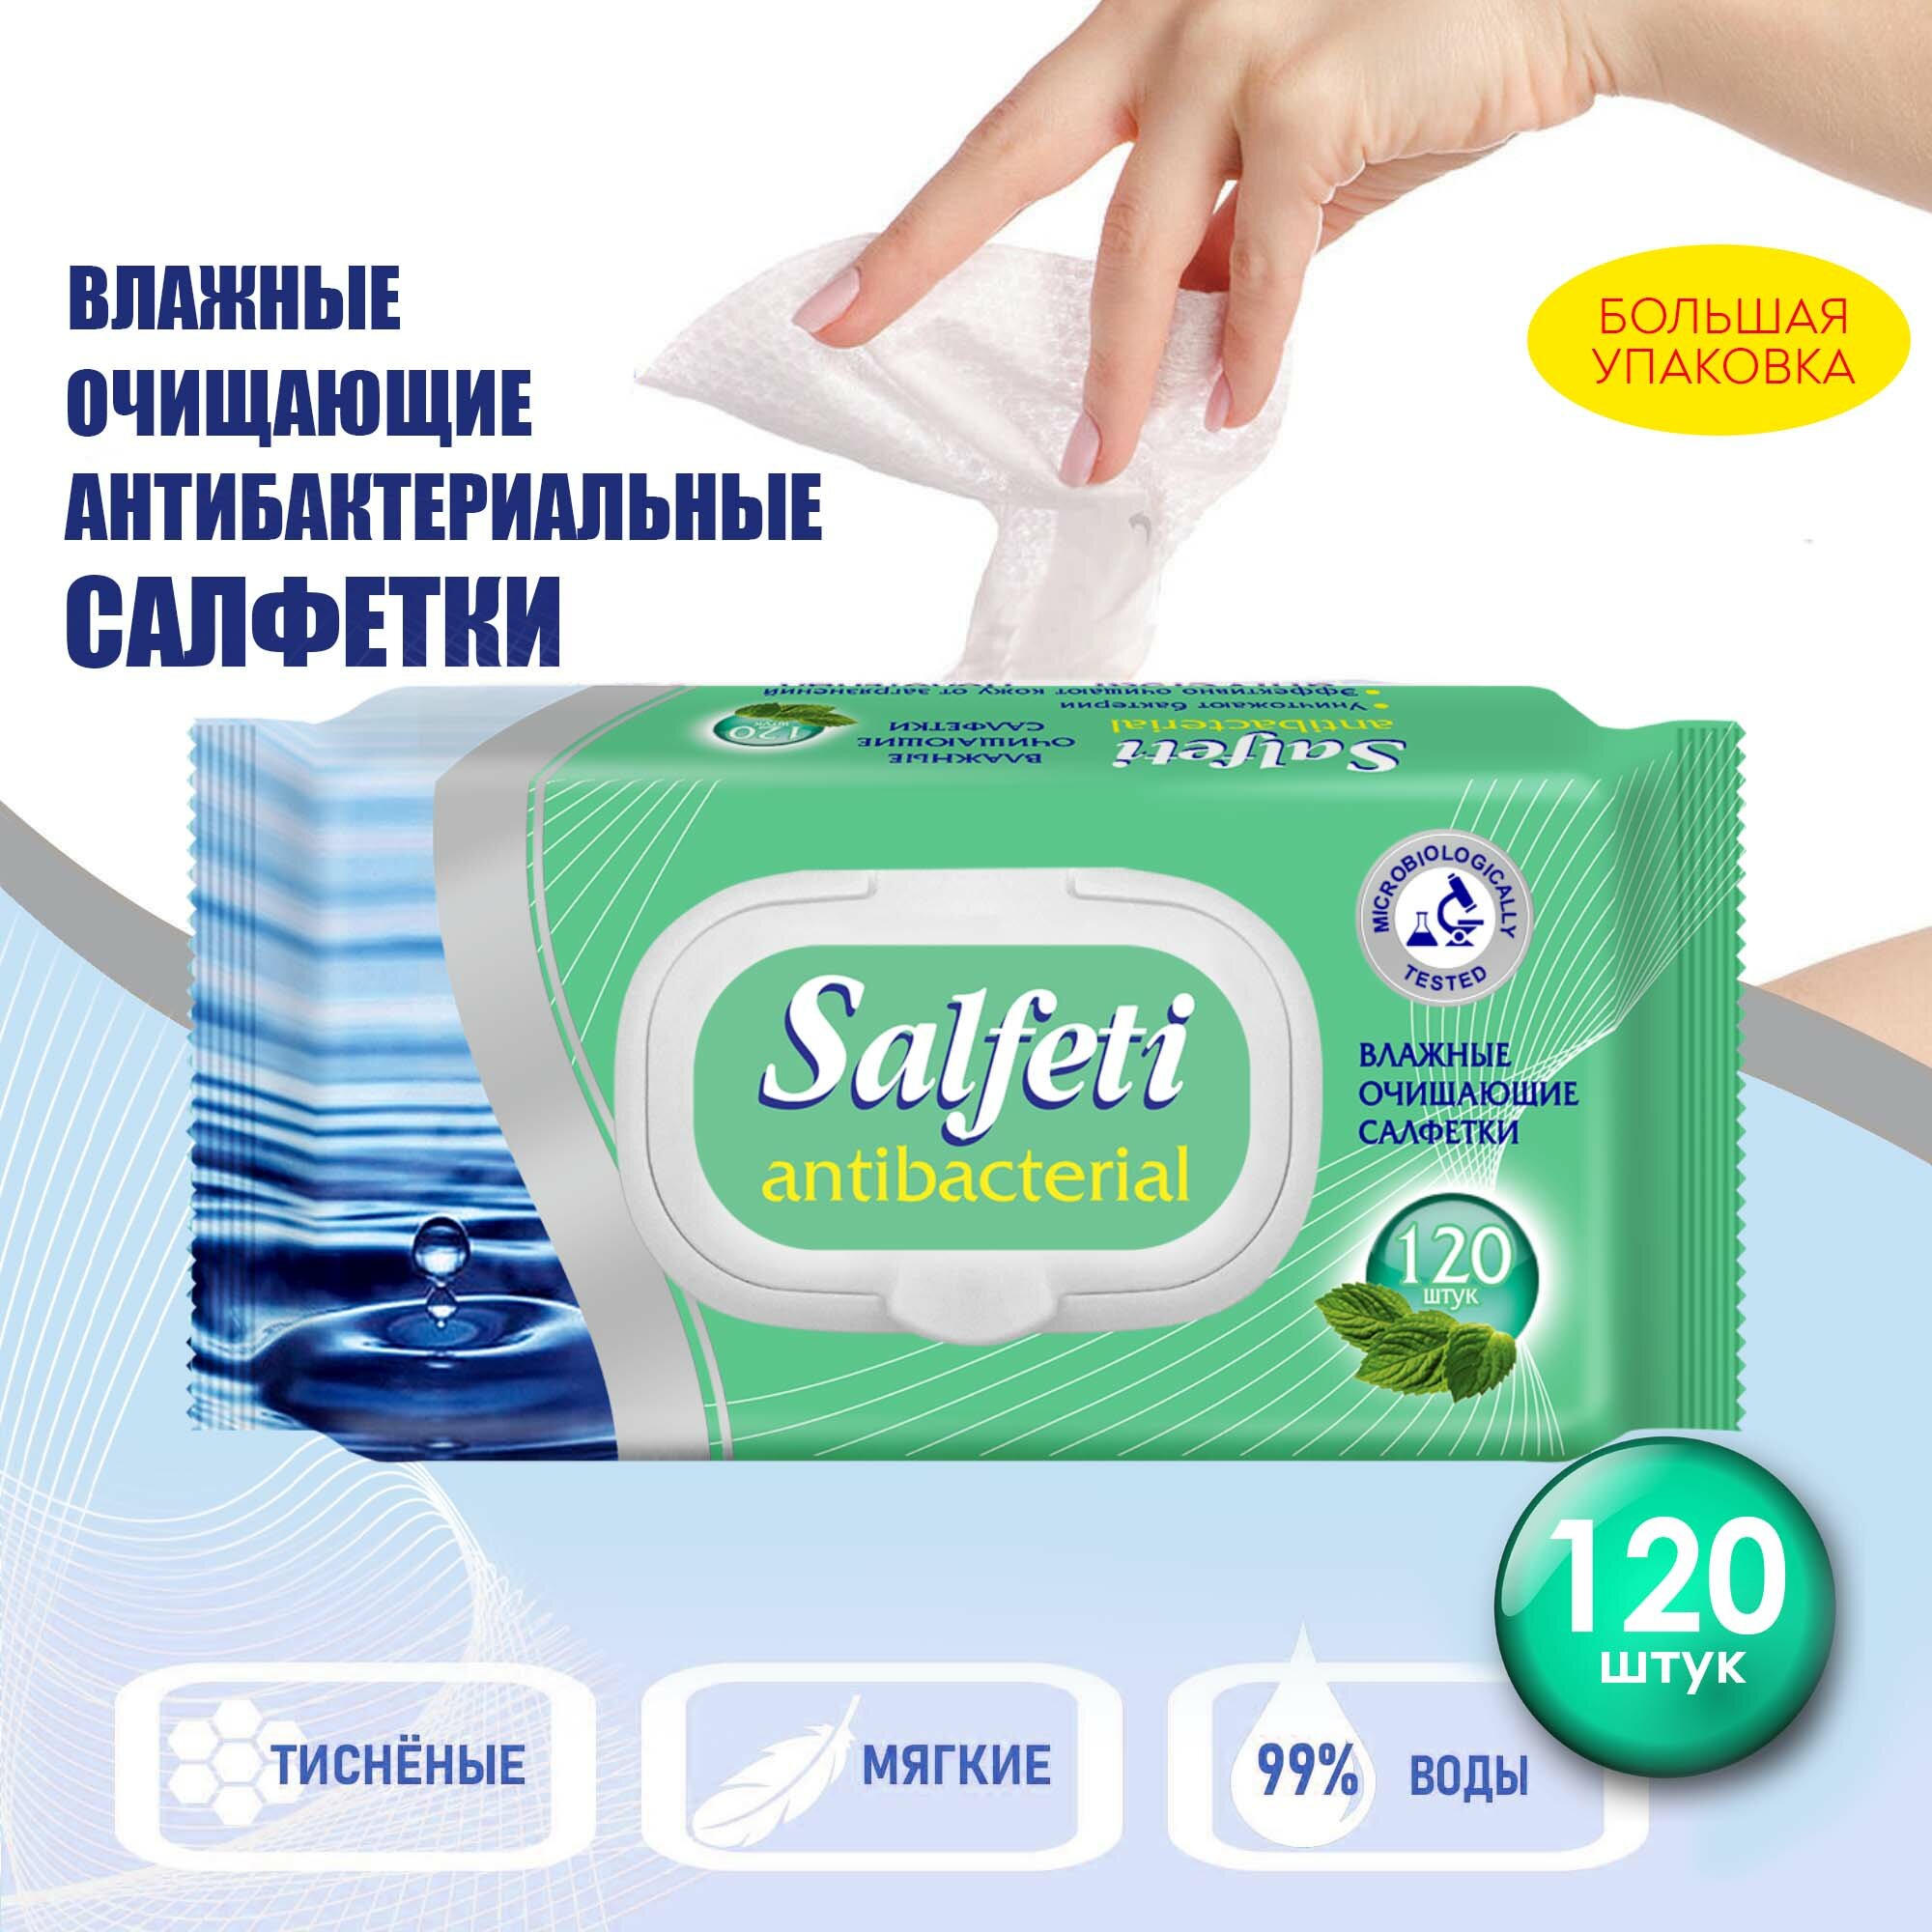 Салфетки влажные Salfeti Antibacterial очищающие, антибактериальные , с клапаном, 120 шт.